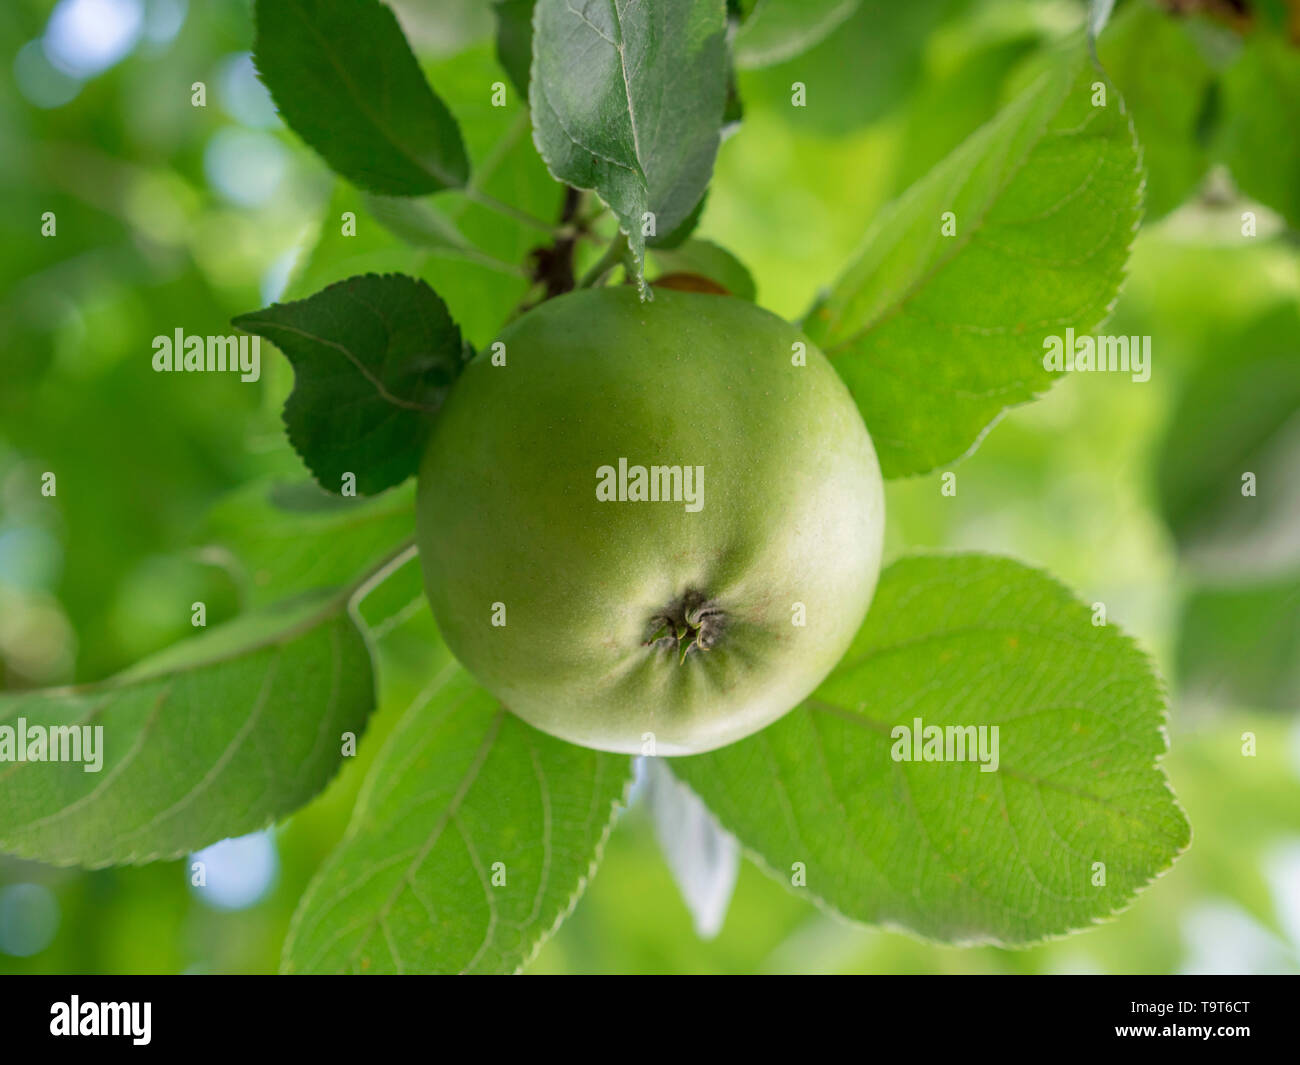 Green bioapple hangs on an apple tree, Grüner Bioapfel hängt an einem Apfelbaum Stock Photo